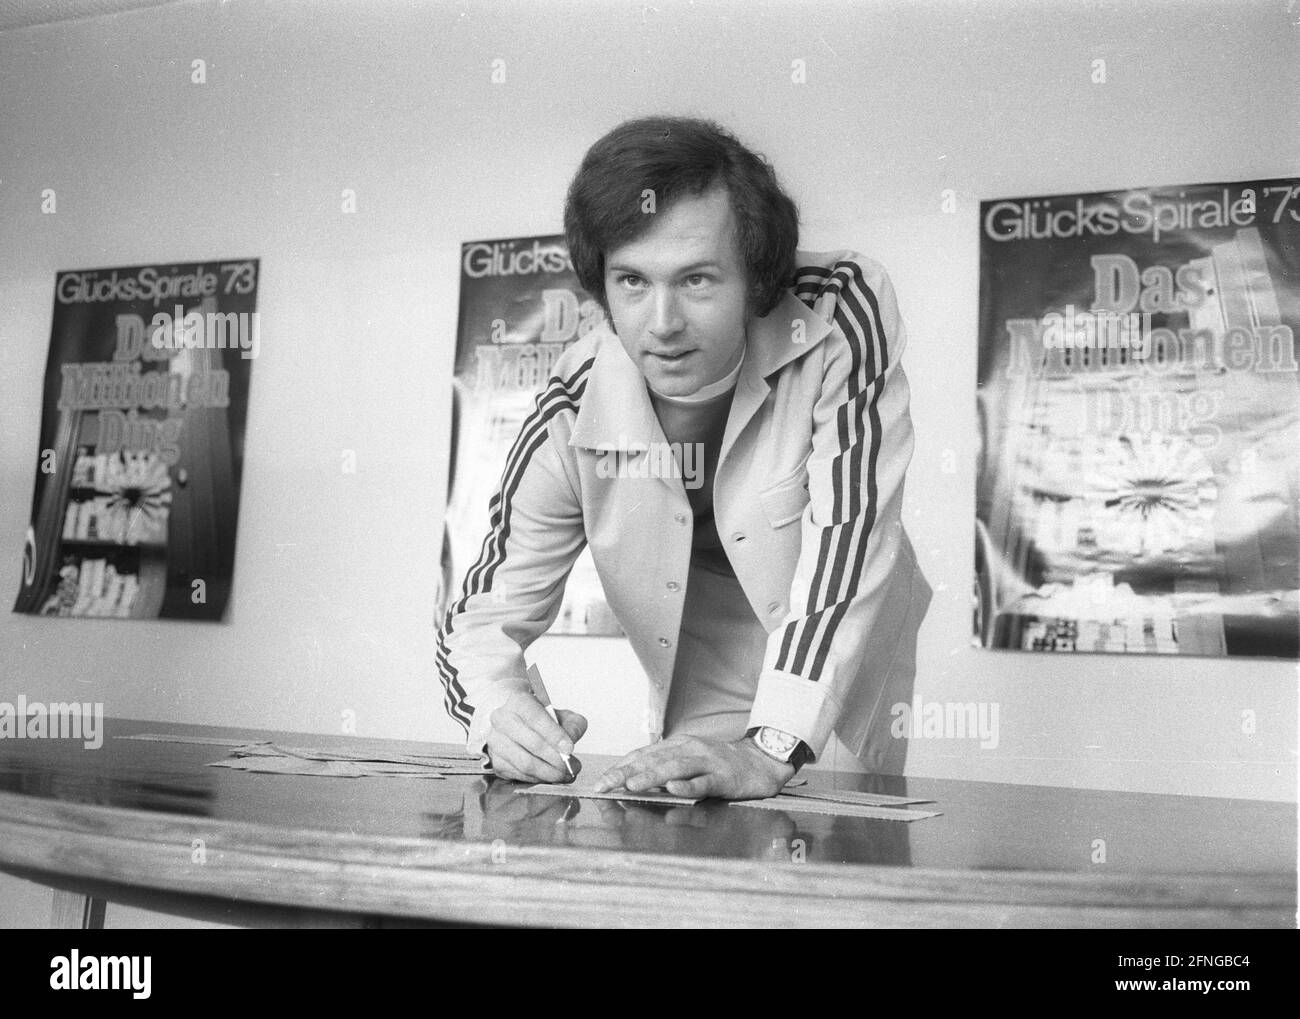 Franz Beckenbauer en una conferencia de prensa del Glücksspirale 26.03.1973. [traducción automática] Foto de stock